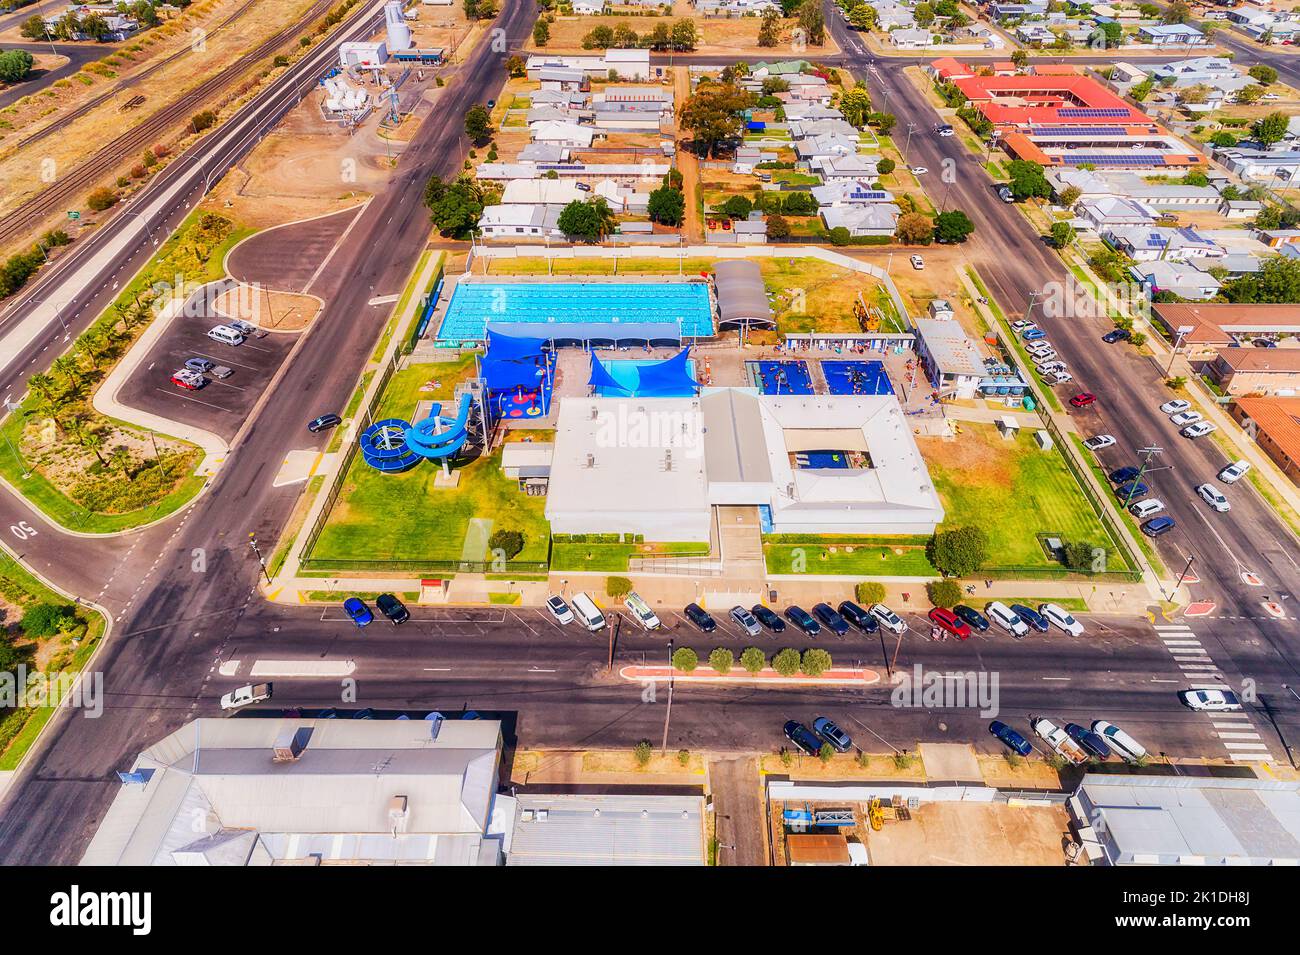 Moree regionale ländliche Stadt im artesianischen Becken Australiens - Luftbild des lokalen Sportkomplexes und der Wohnstraßen. Stockfoto